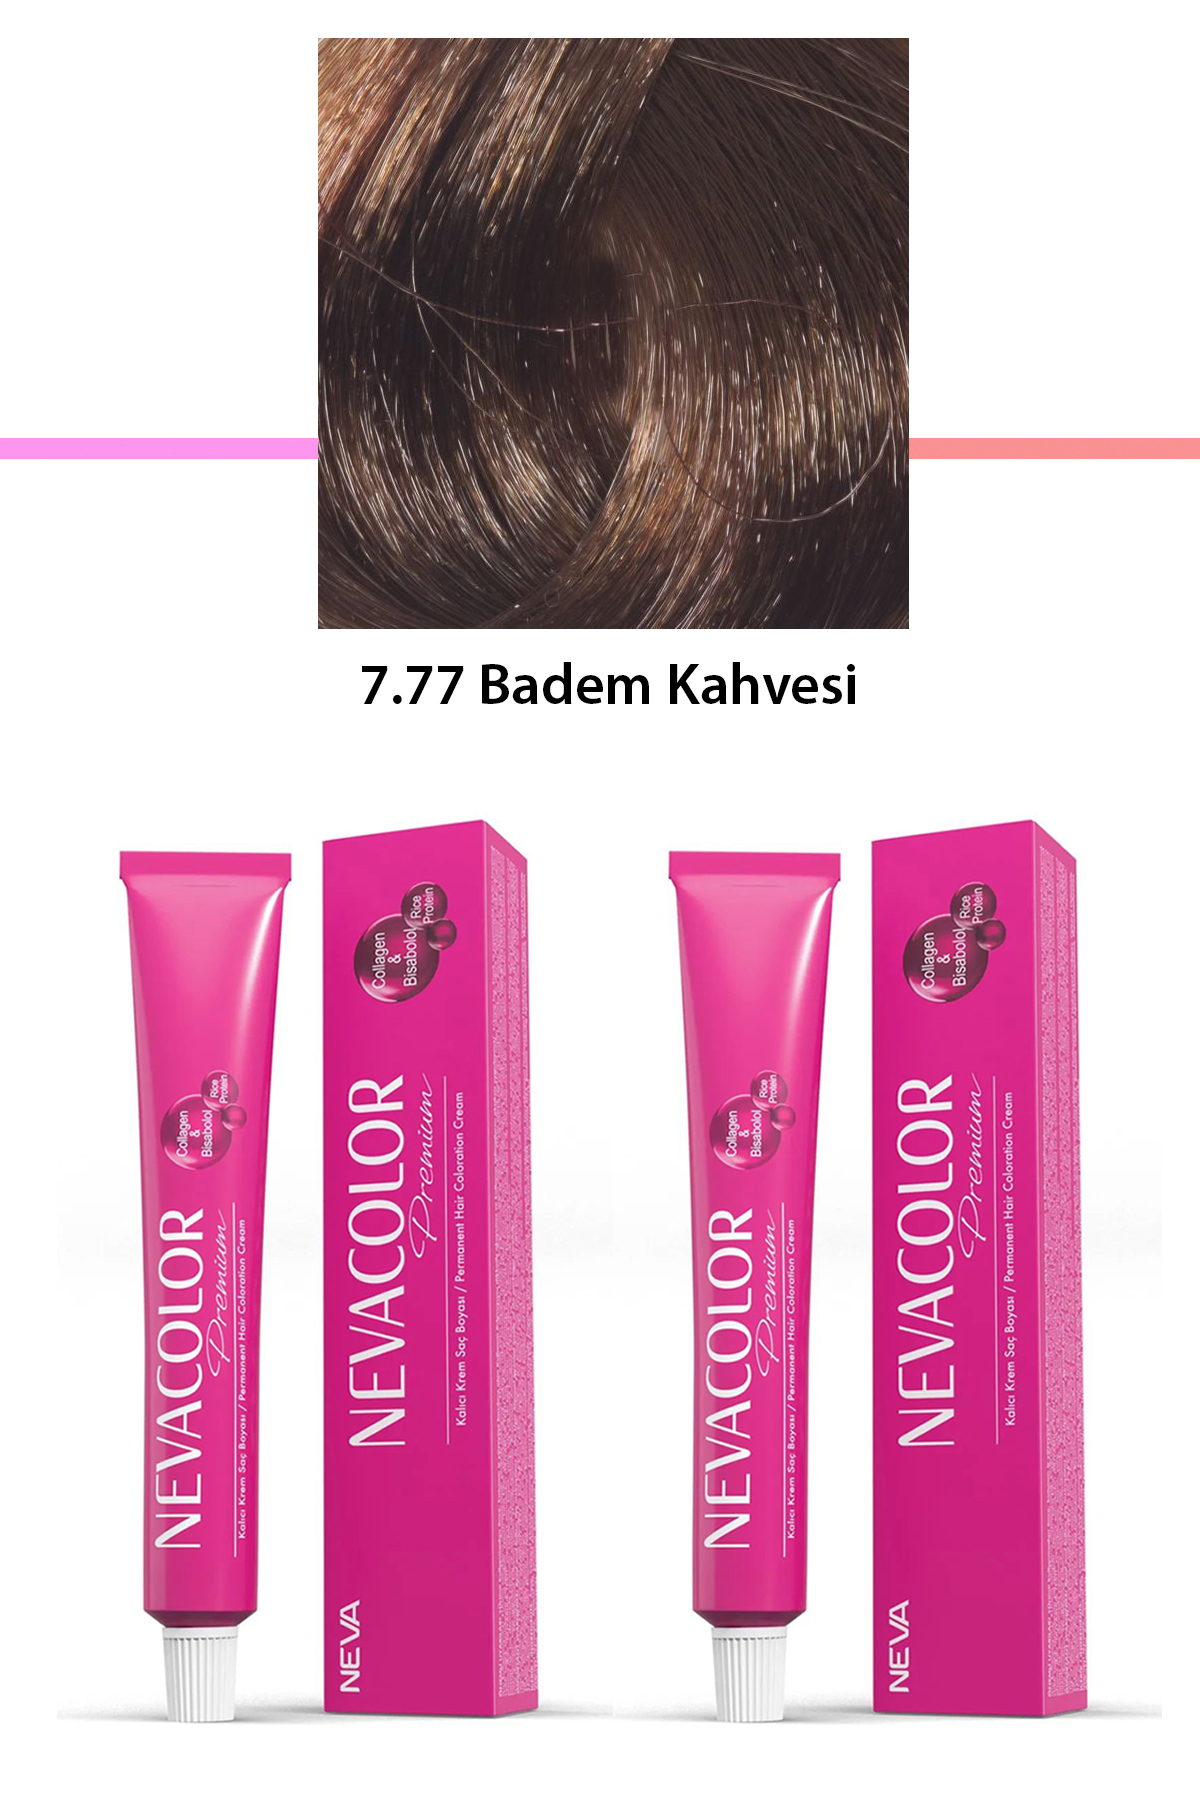 2 li Set Premium 7.77 Badem Kahvesi - Kalıcı Krem Saç Boyası 2 X 50 g Tüp